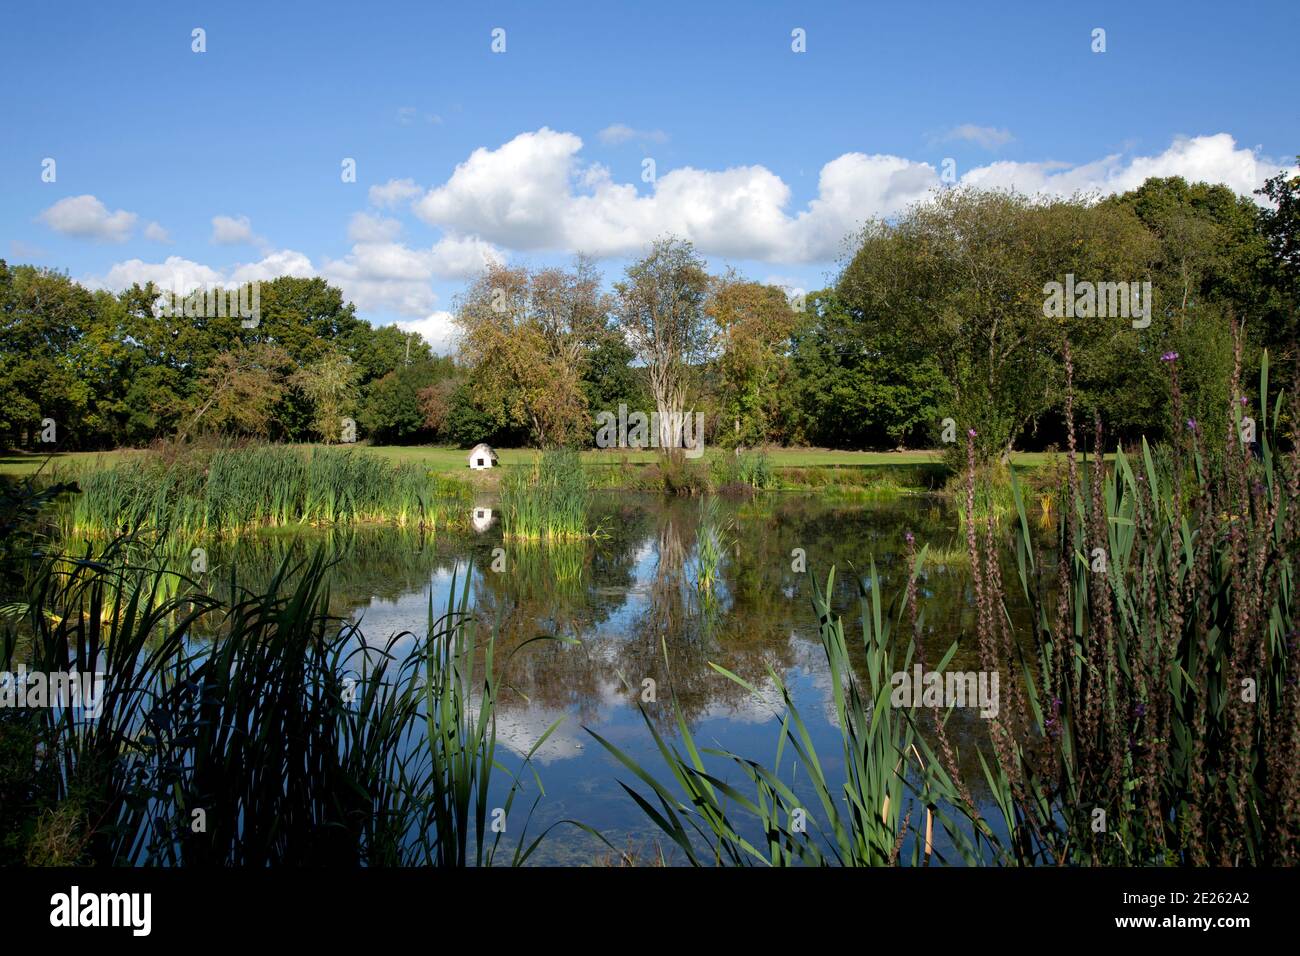 Gran estanque jardín o lago con casa de pato y el cielo reflexión Foto de stock